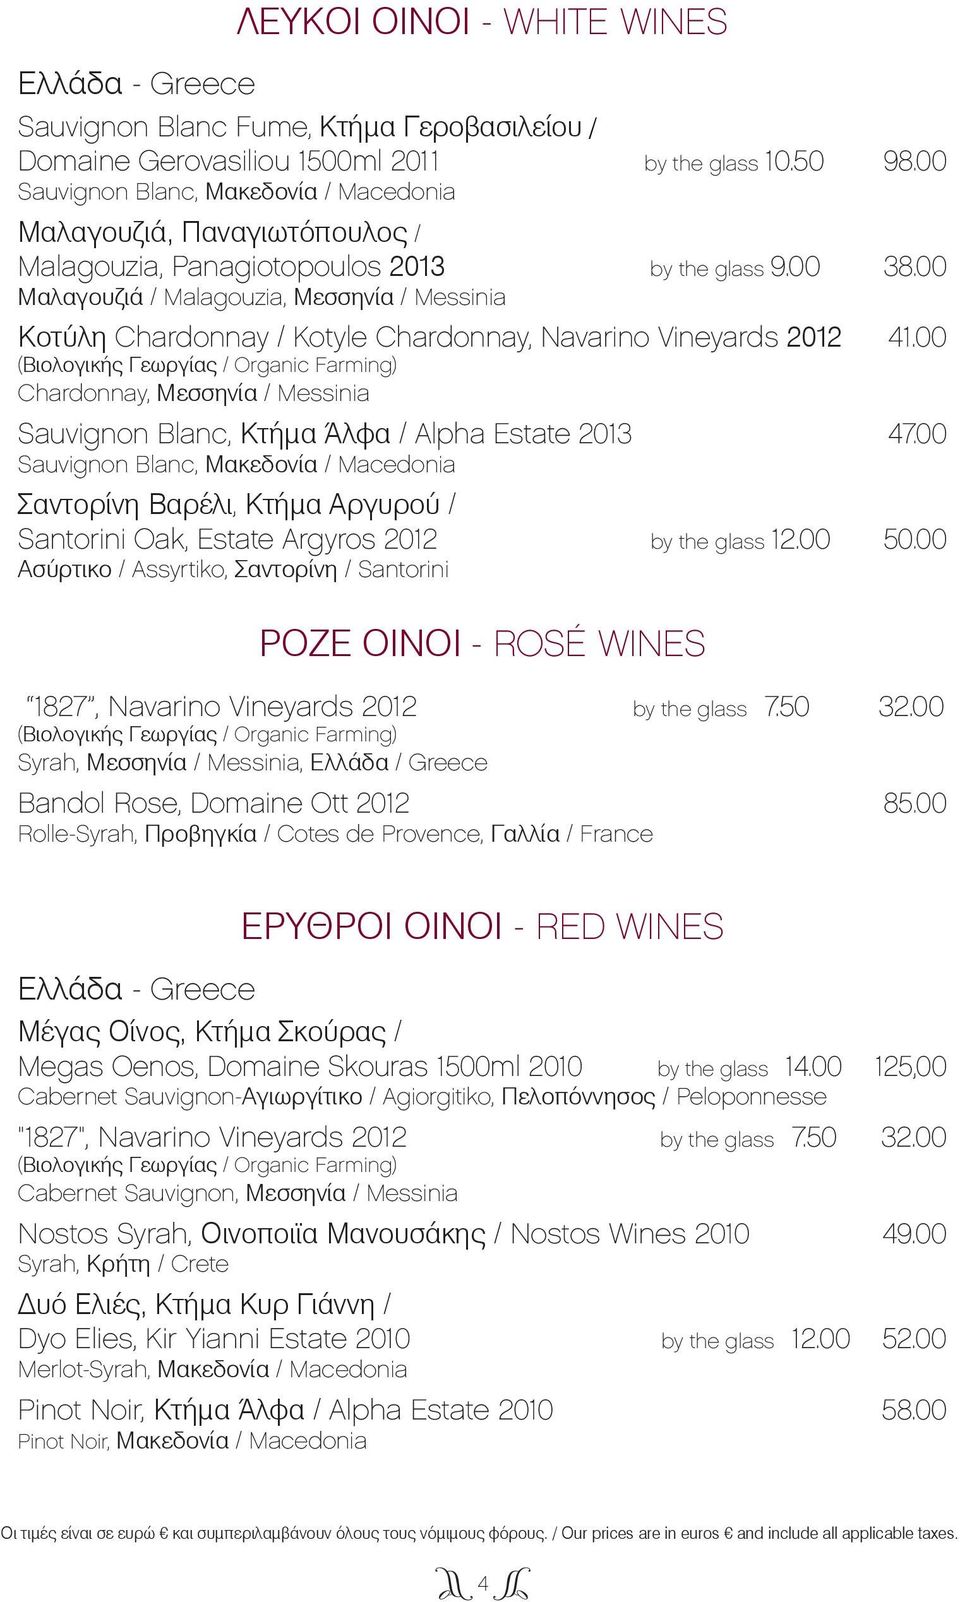 00 Μαλαγουζιά / Malagouzia, Μεσσηνία / Messinia Κοτύλη Chardonnay / Kotyle Chardonnay, Navarino Vineyards 2012 41.